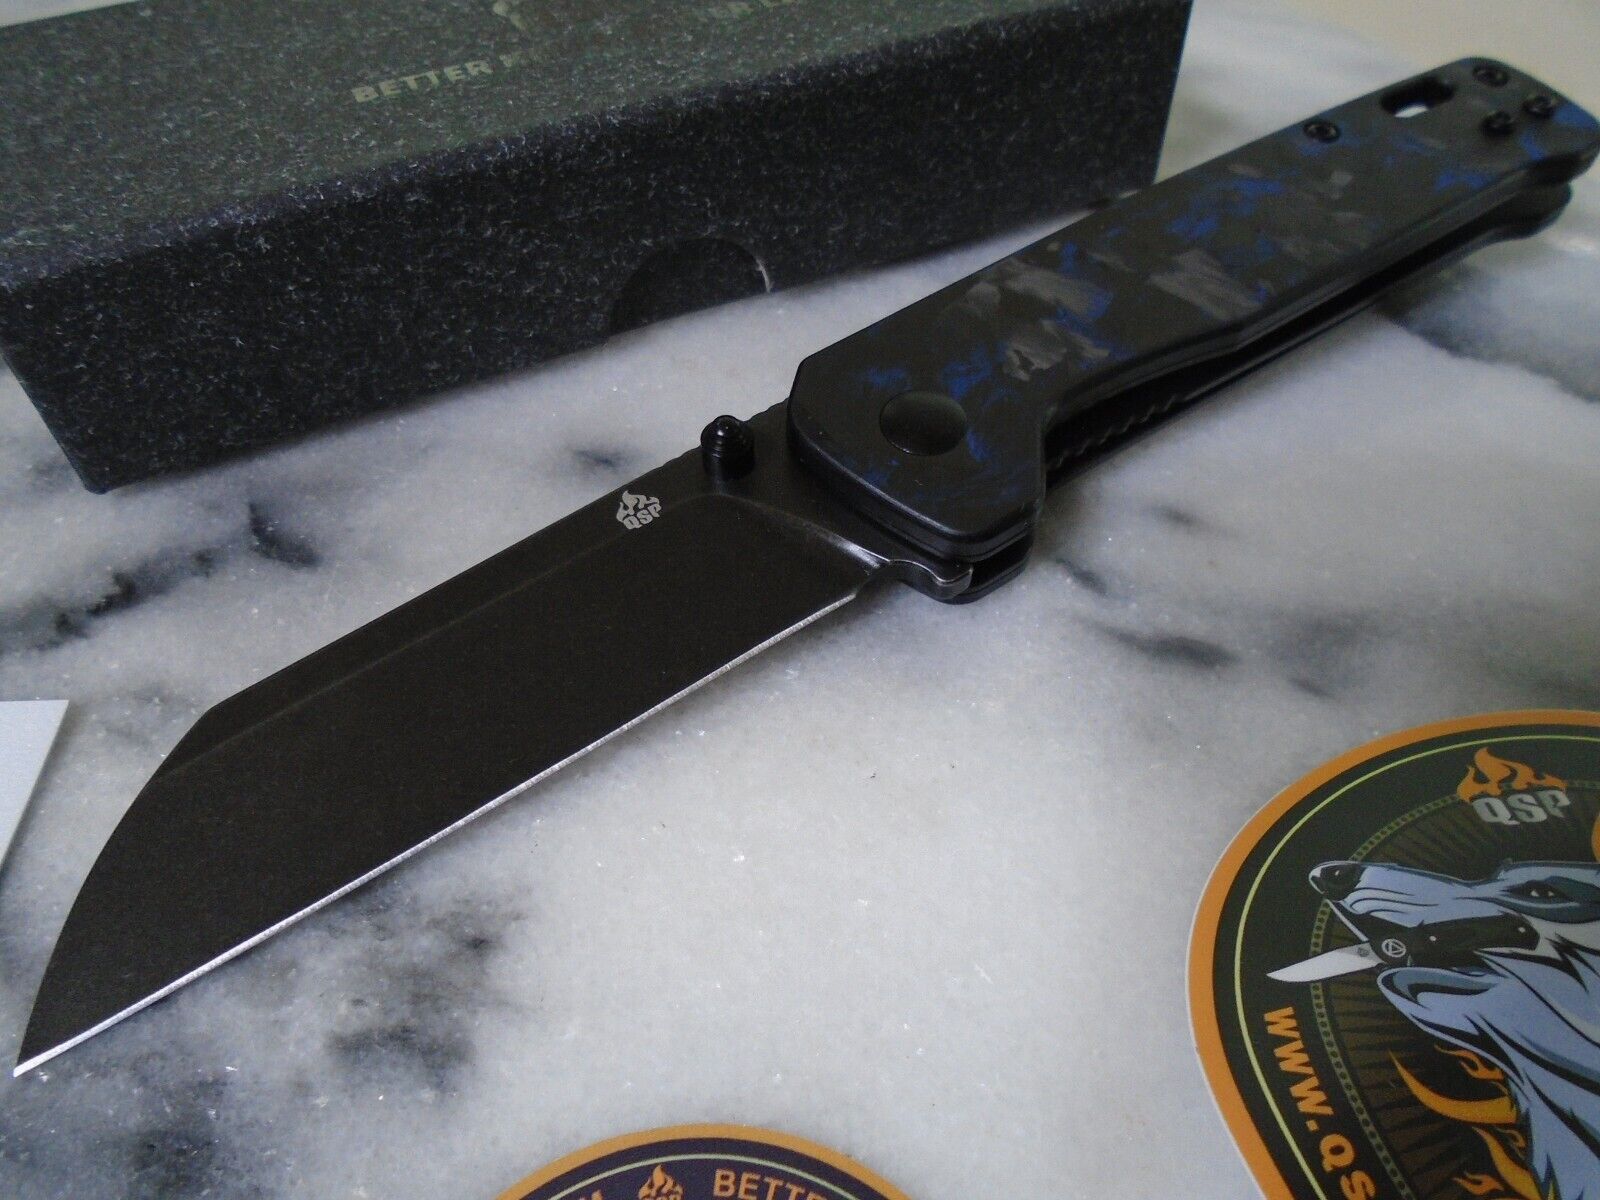 QSP Penguin Pocket Knife D2 Blue Shredded Carbon Fiber 2 Way Clip QS130-UBL New